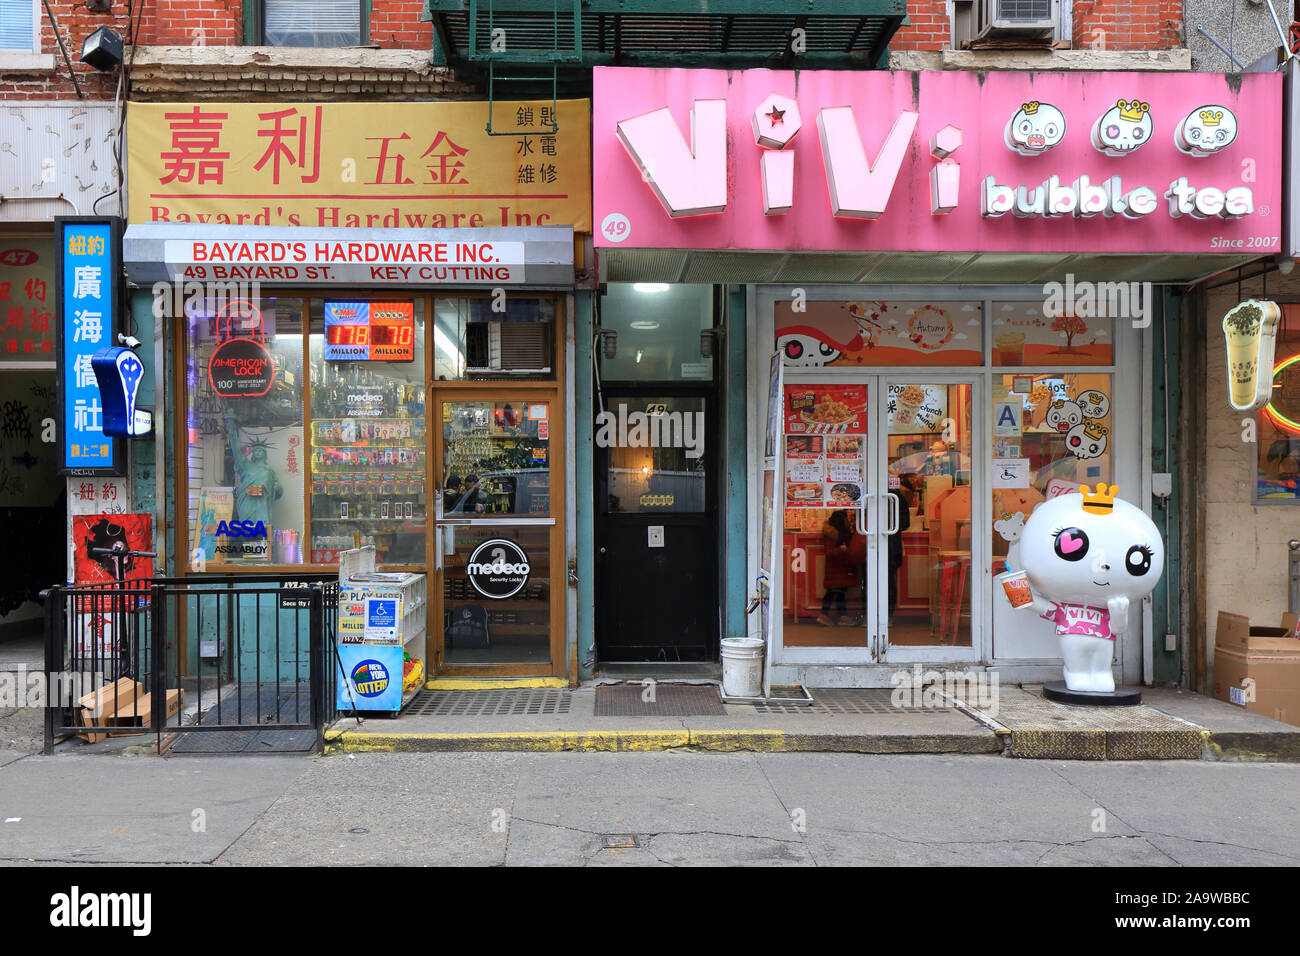 Le matériel de Bayard, Vivi Bubble Tea, 49 rue Bayard, New York, NY vitrines extérieures des entreprises locales à Manhattan Chinatown Banque D'Images